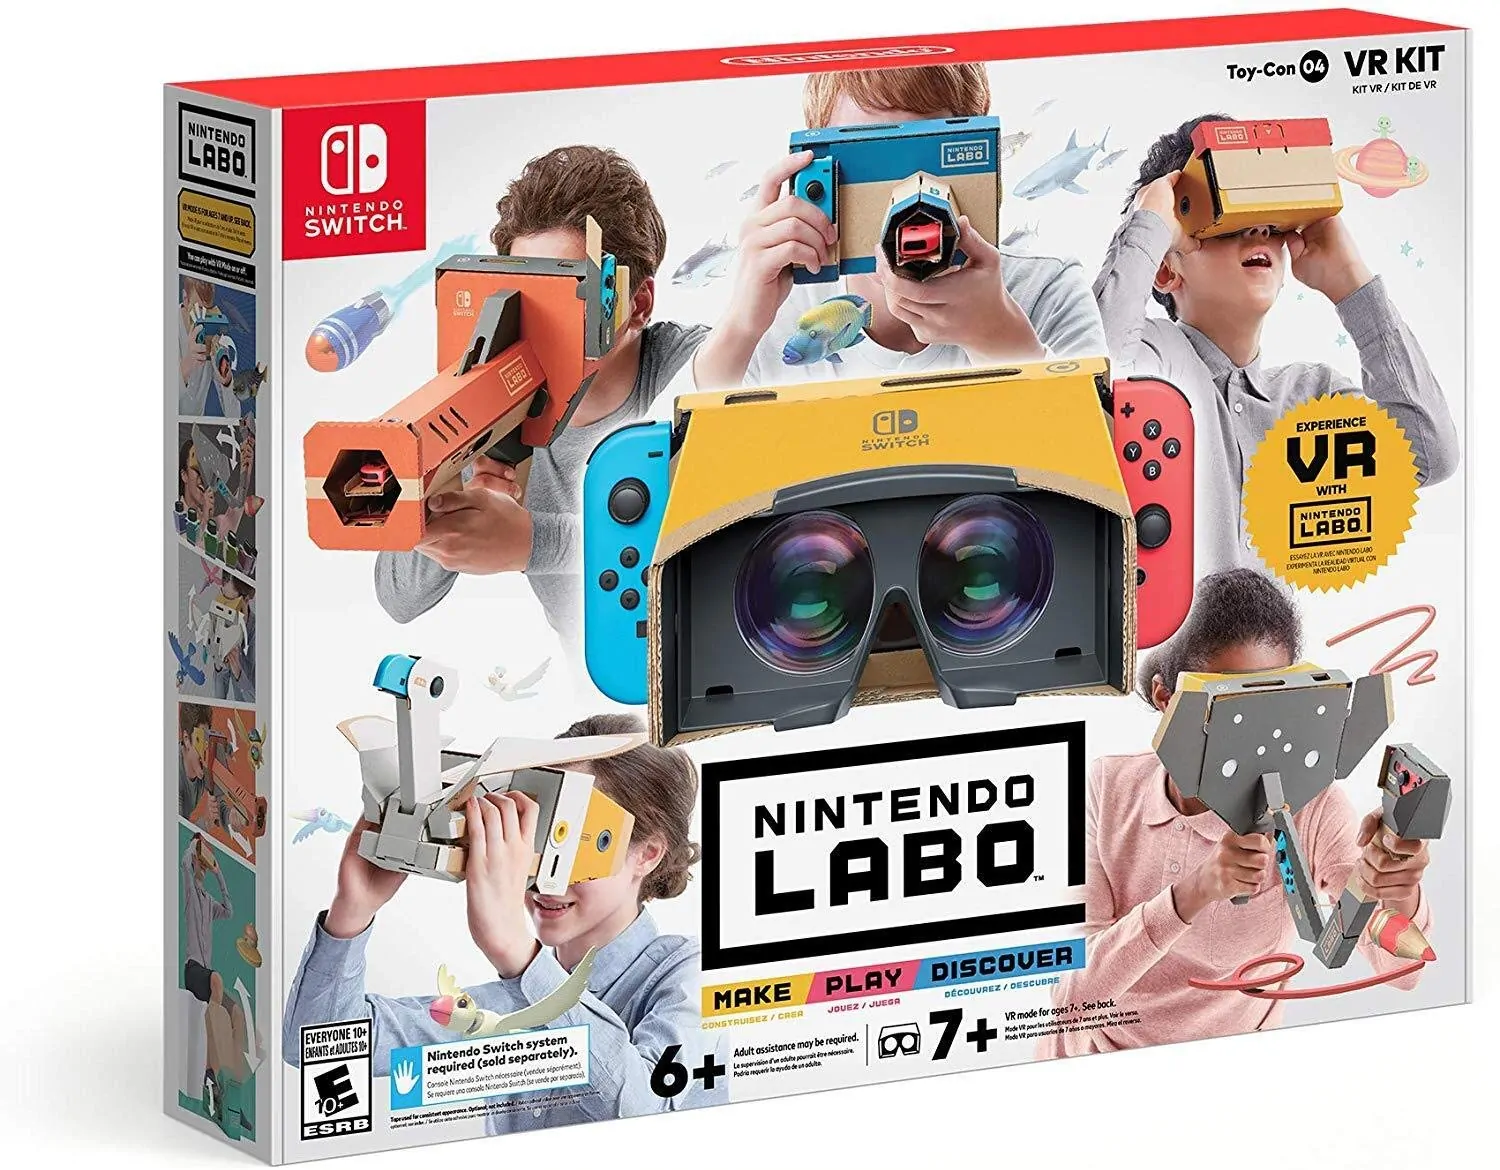 Ninendo Labo VR Kit